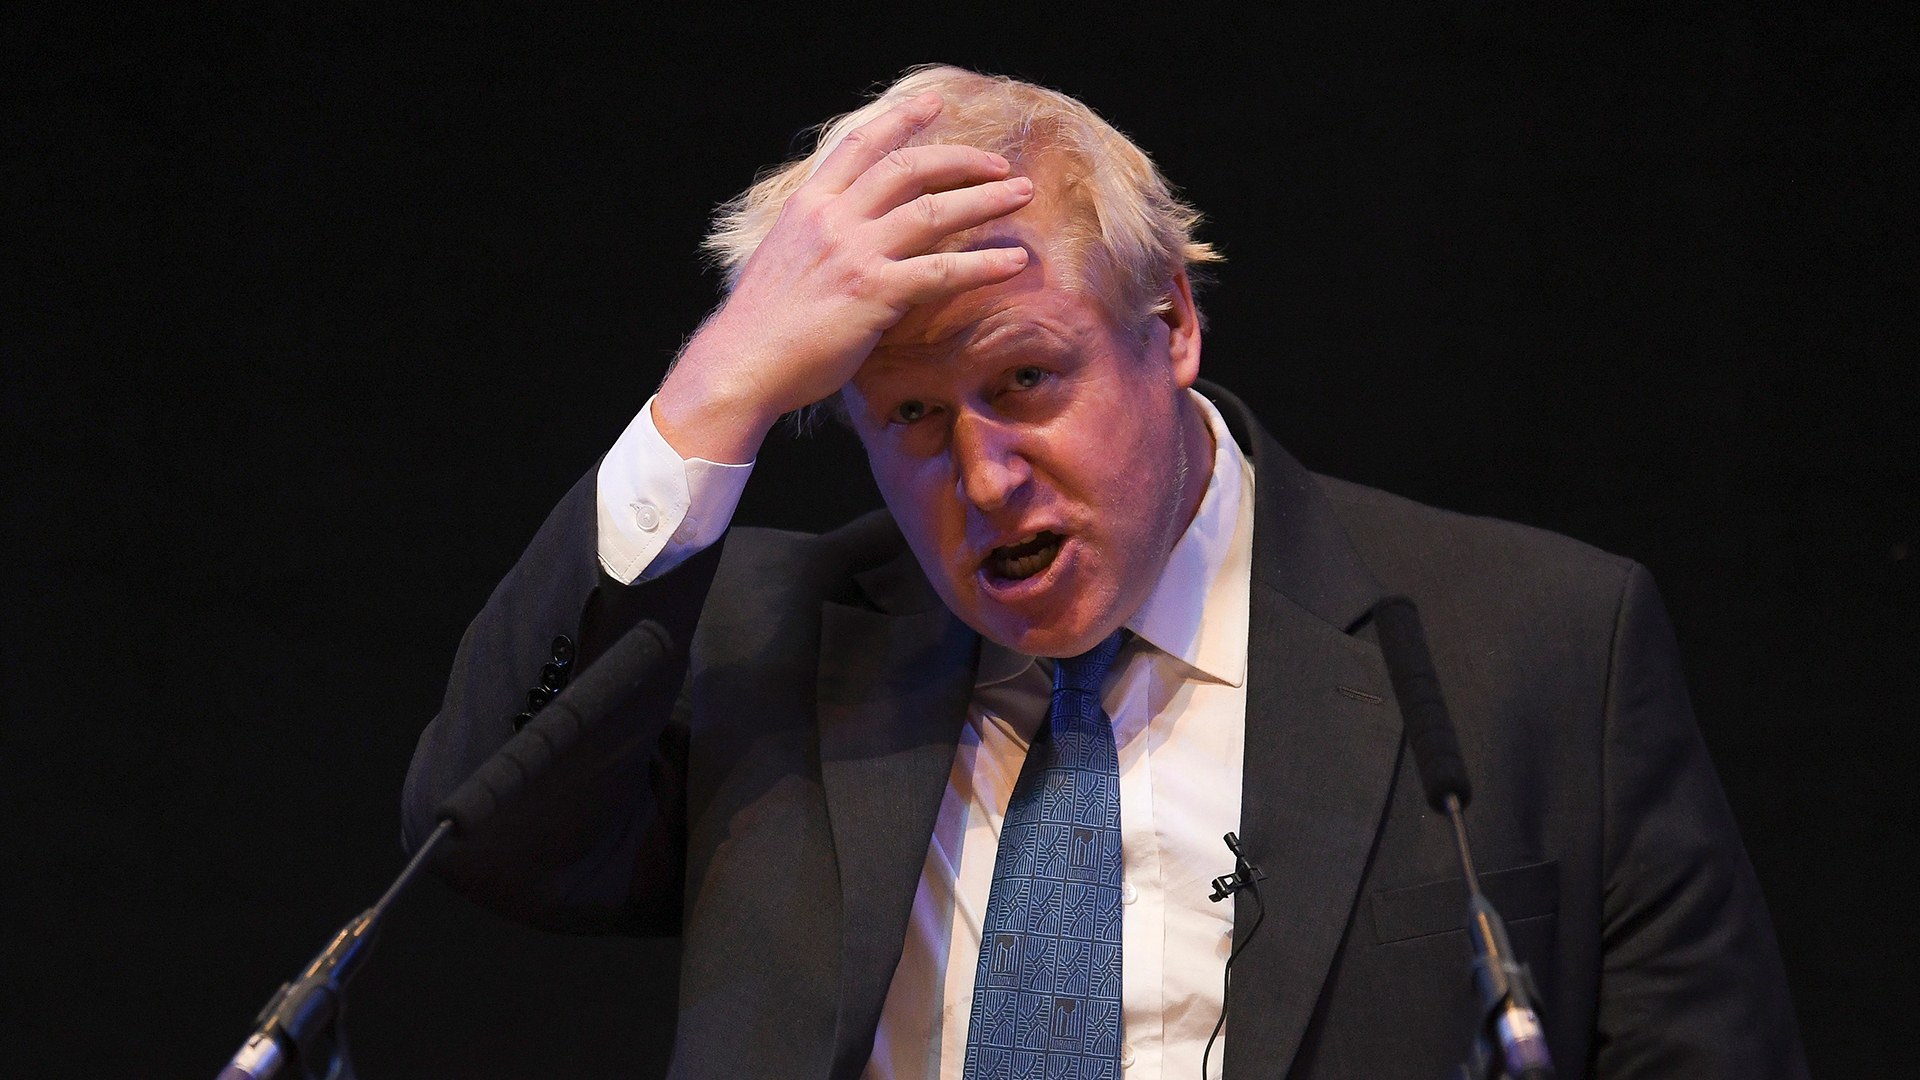 Lãnh đạo các đảng đối lập đang kêu gọi mở cuộc điều tra nhằm vào Thủ tướng Anh – ông Boris Johnson, vì phản ứng chậm với dịch bệnh (ảnh: Reuters)